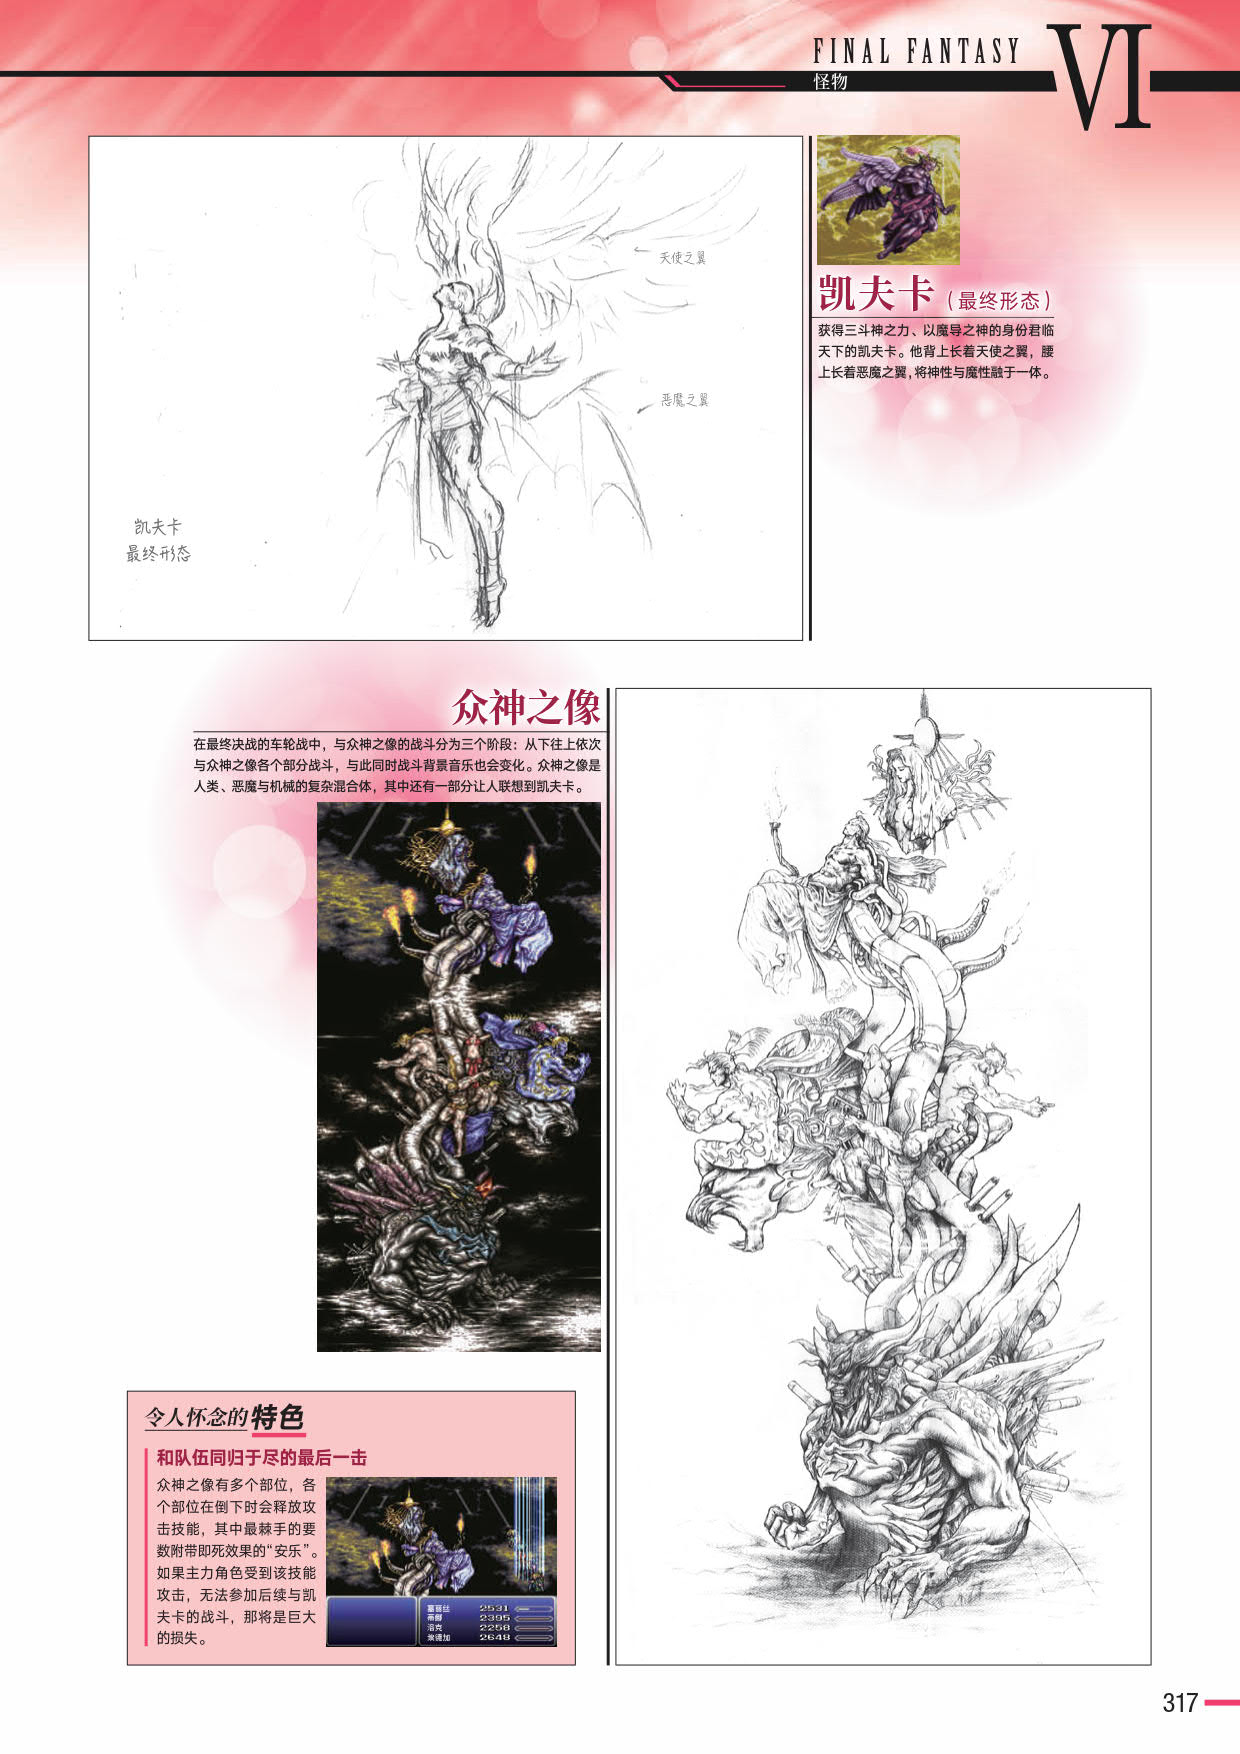 野村哲也繪製的《最終幻想VI》的凱夫卡與眾神之像